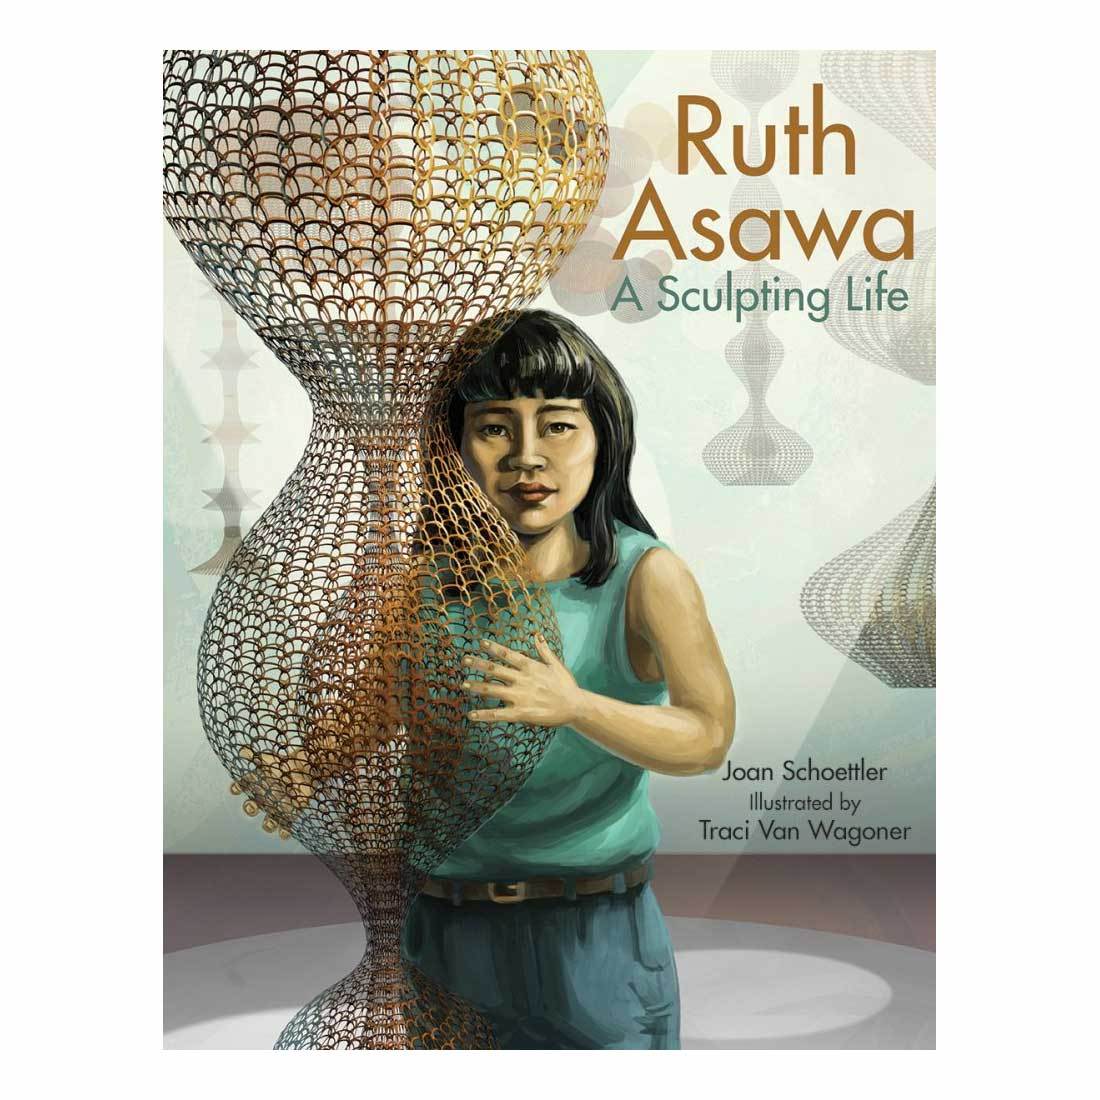 Ruth Asawa: A Sculpting Life